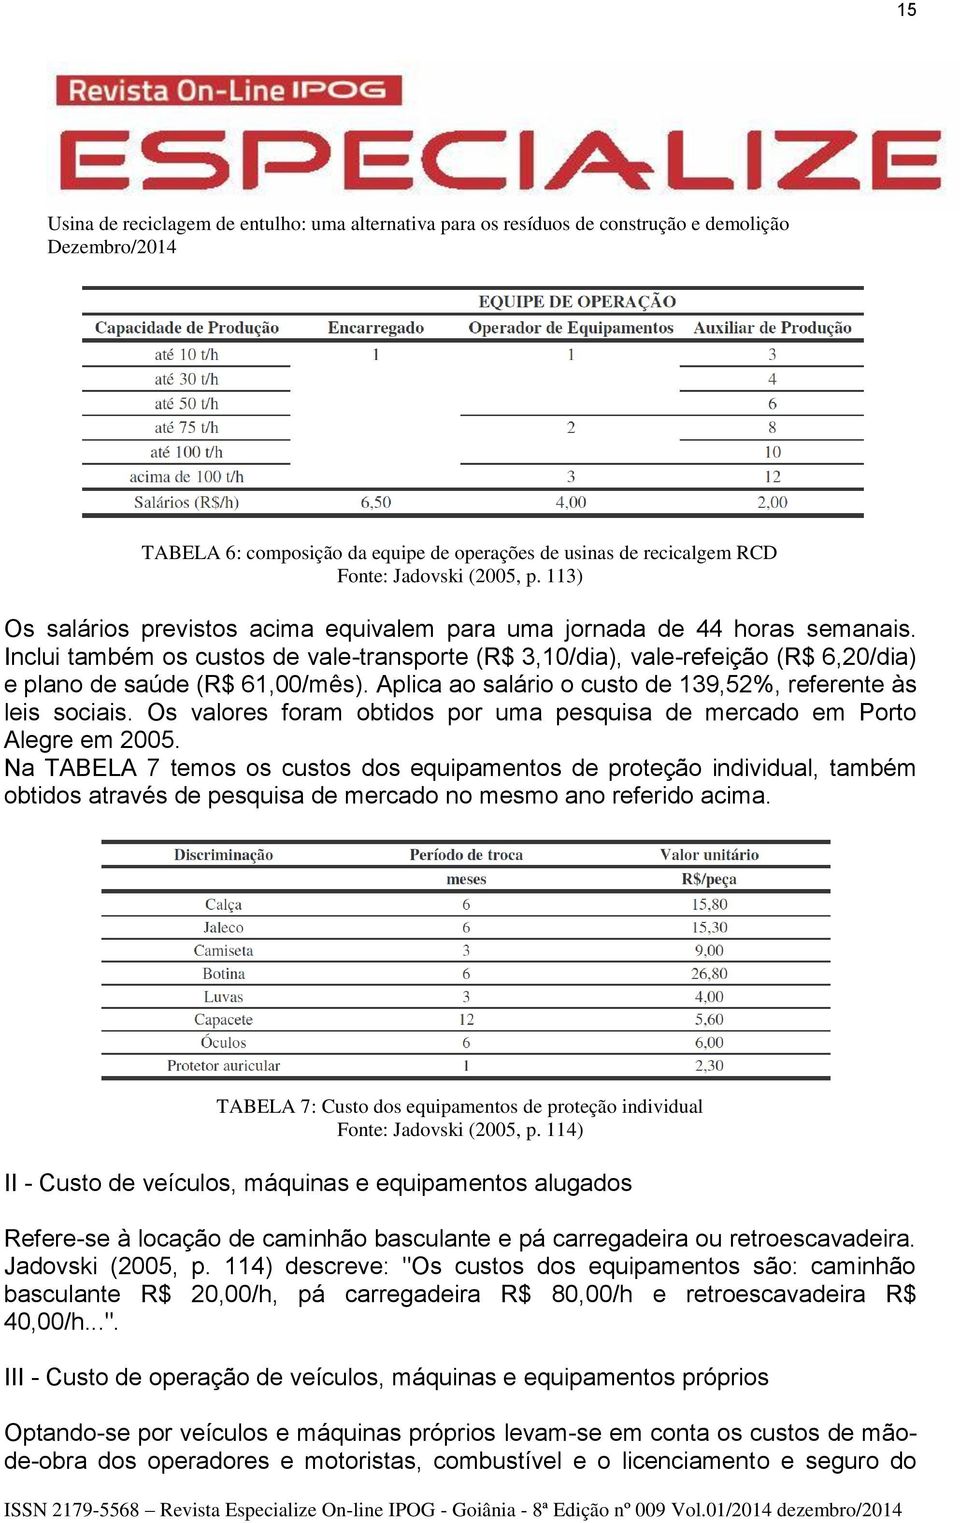 Os valores foram obtidos por uma pesquisa de mercado em Porto Alegre em 2005.